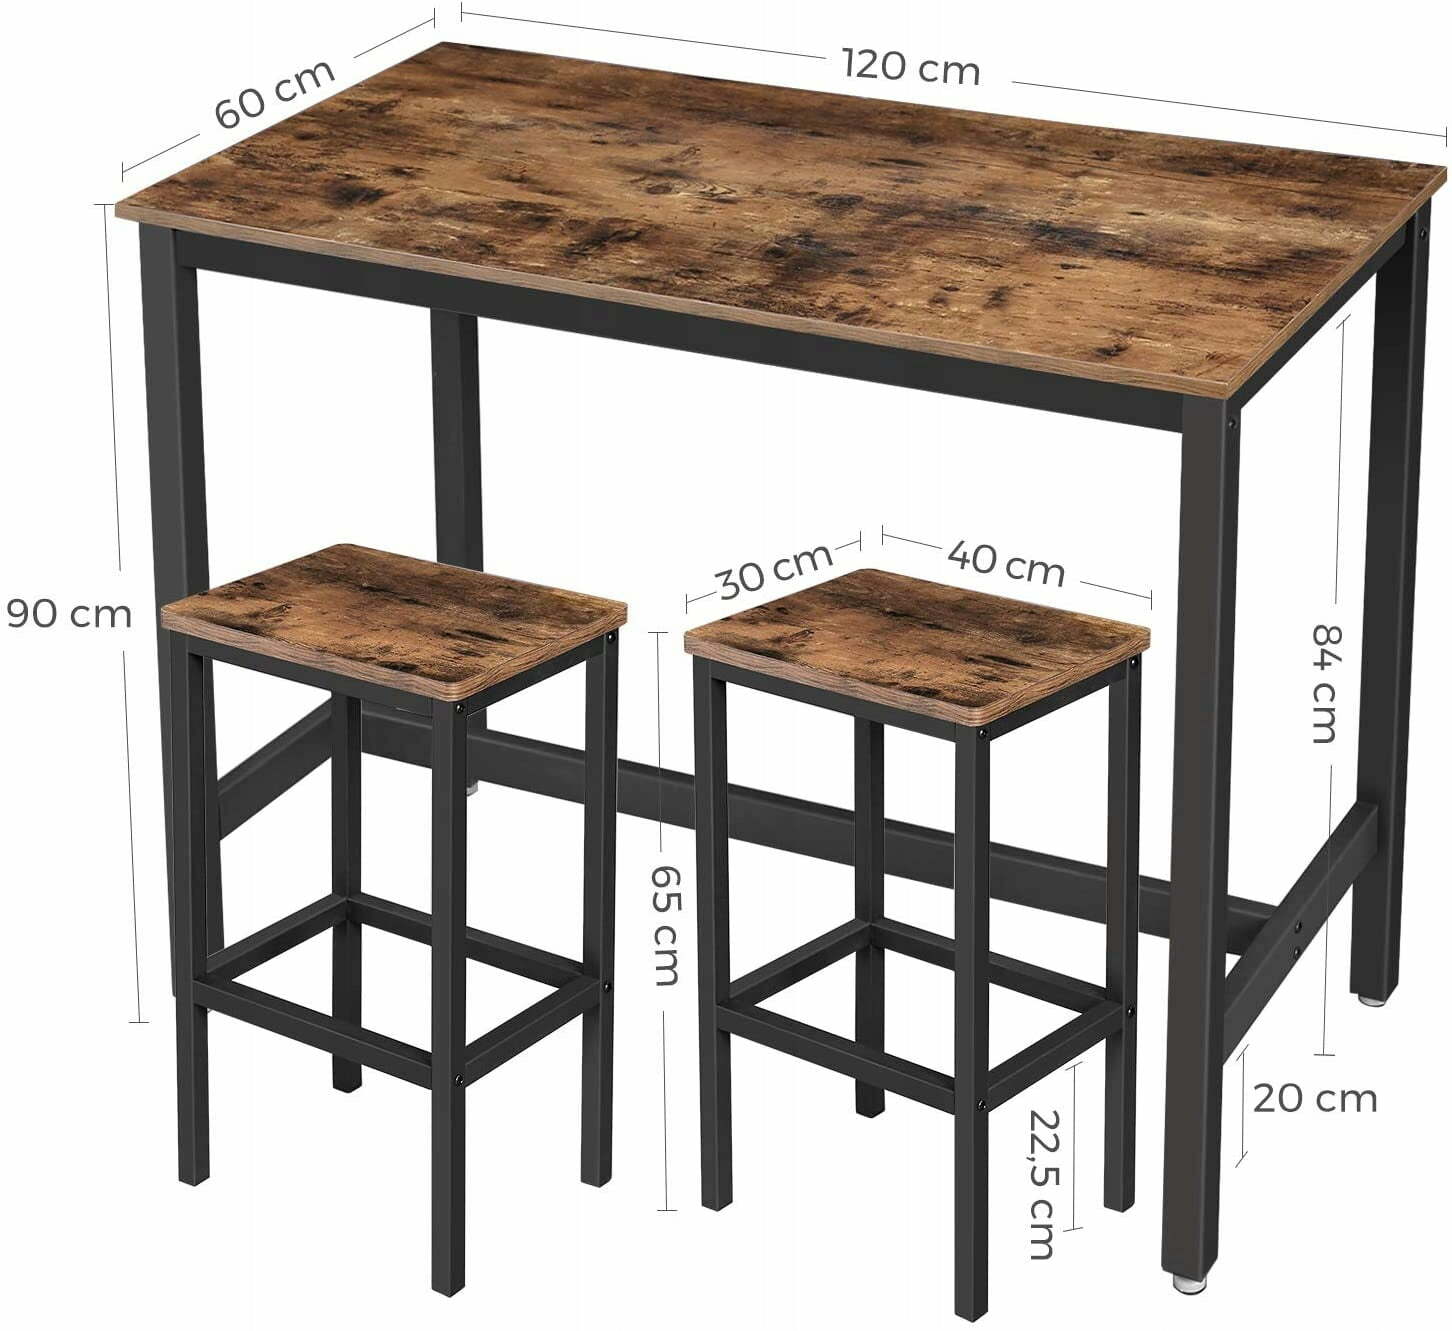 Stół + 2 hokery 120x60x90 | 40x30x65 VST4 - wymiary